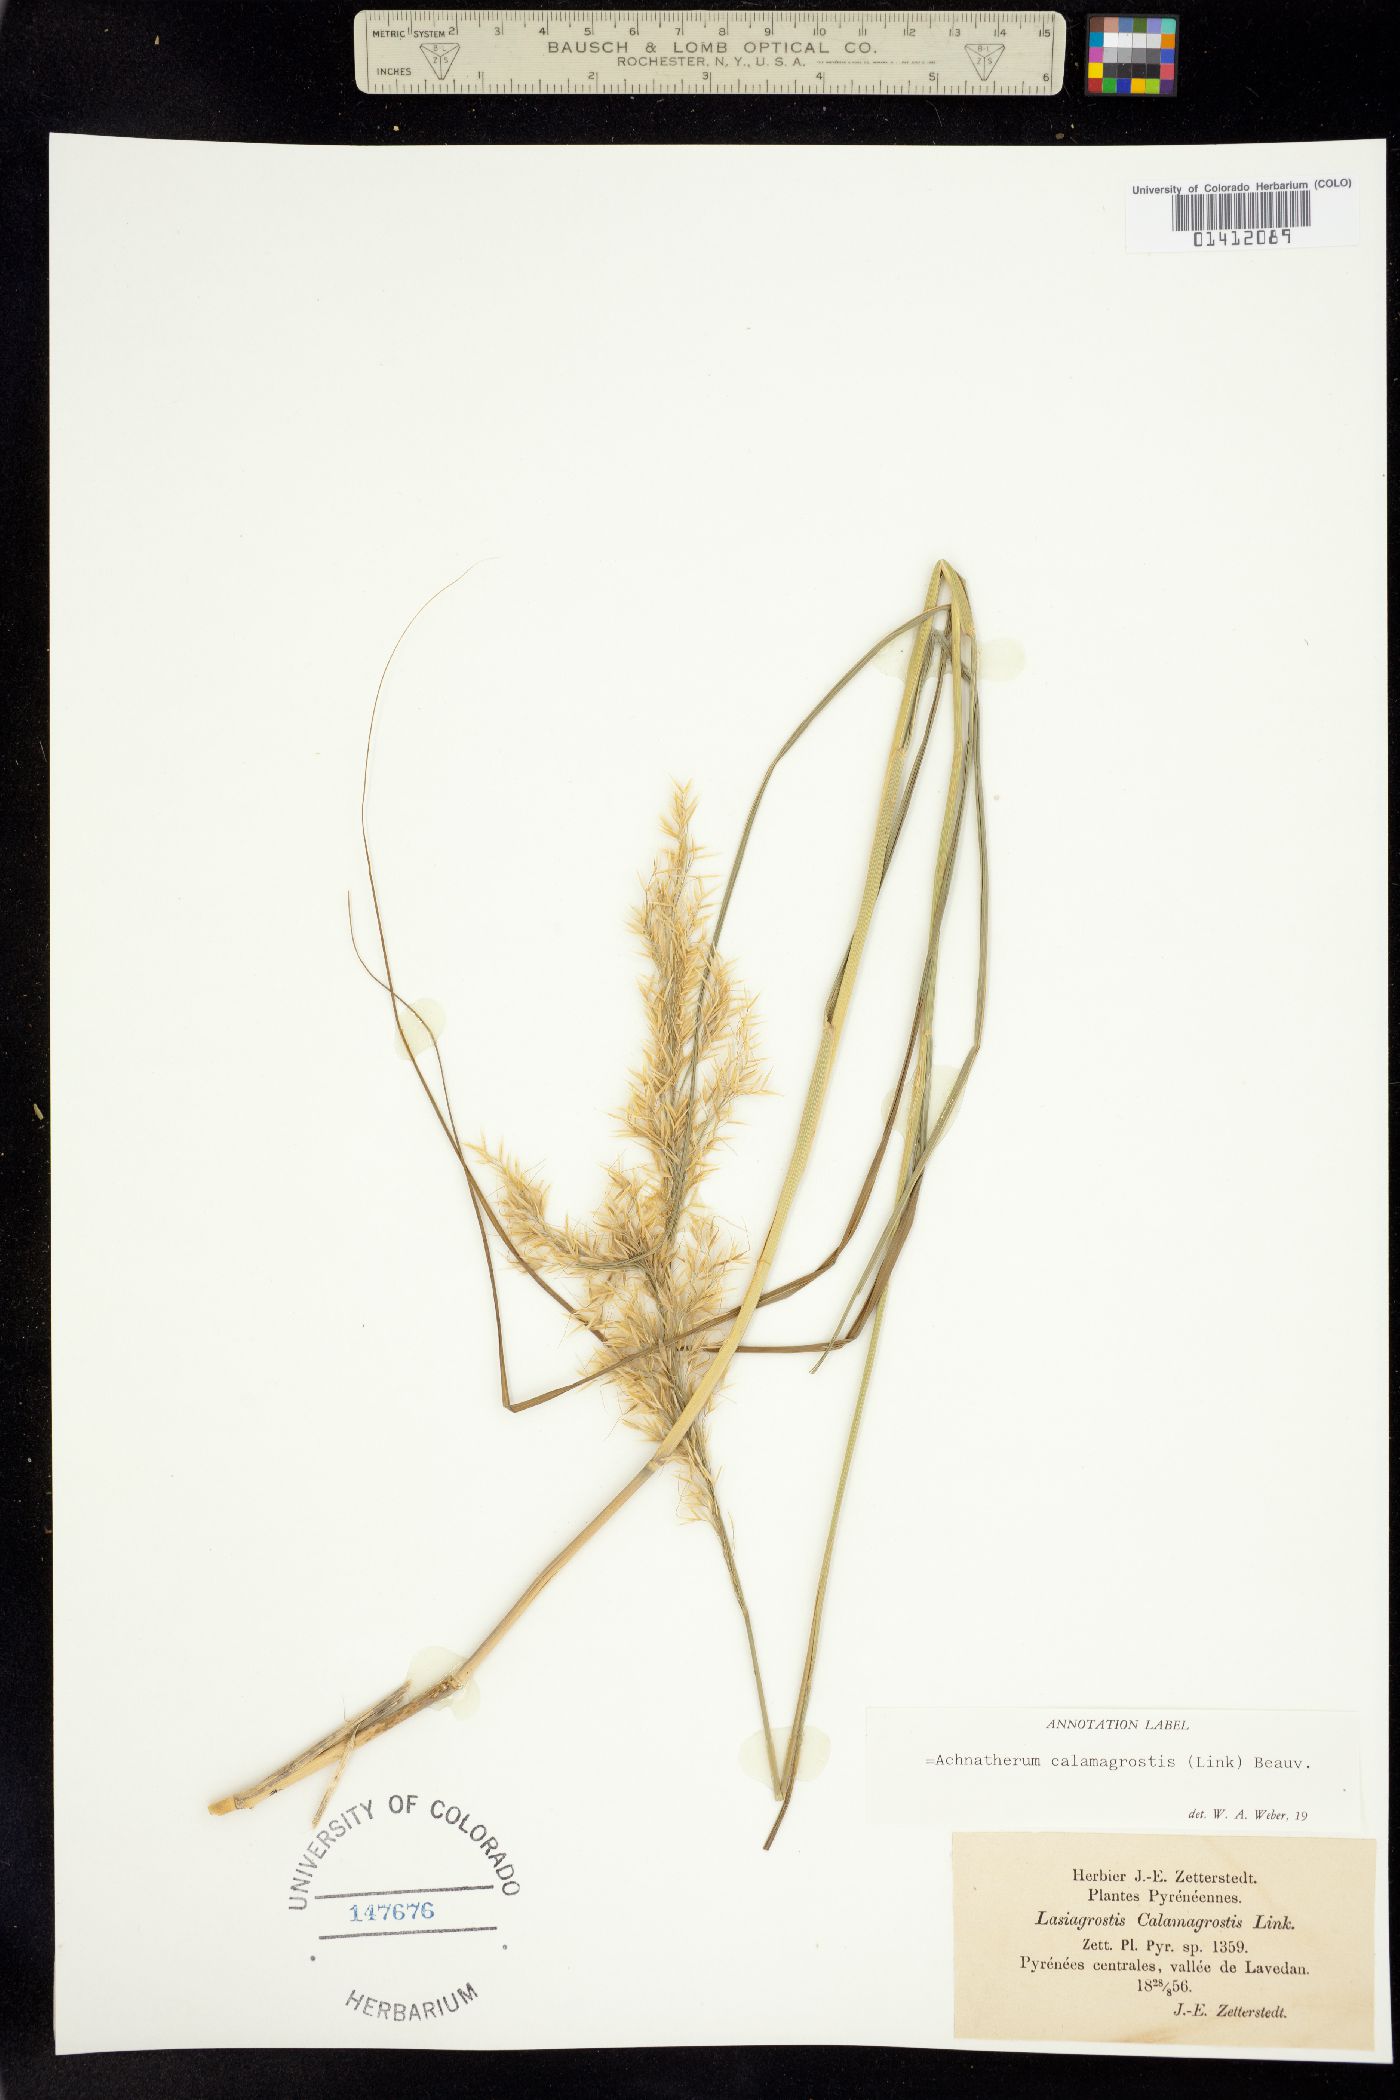 Achnatherum calamagrostis image